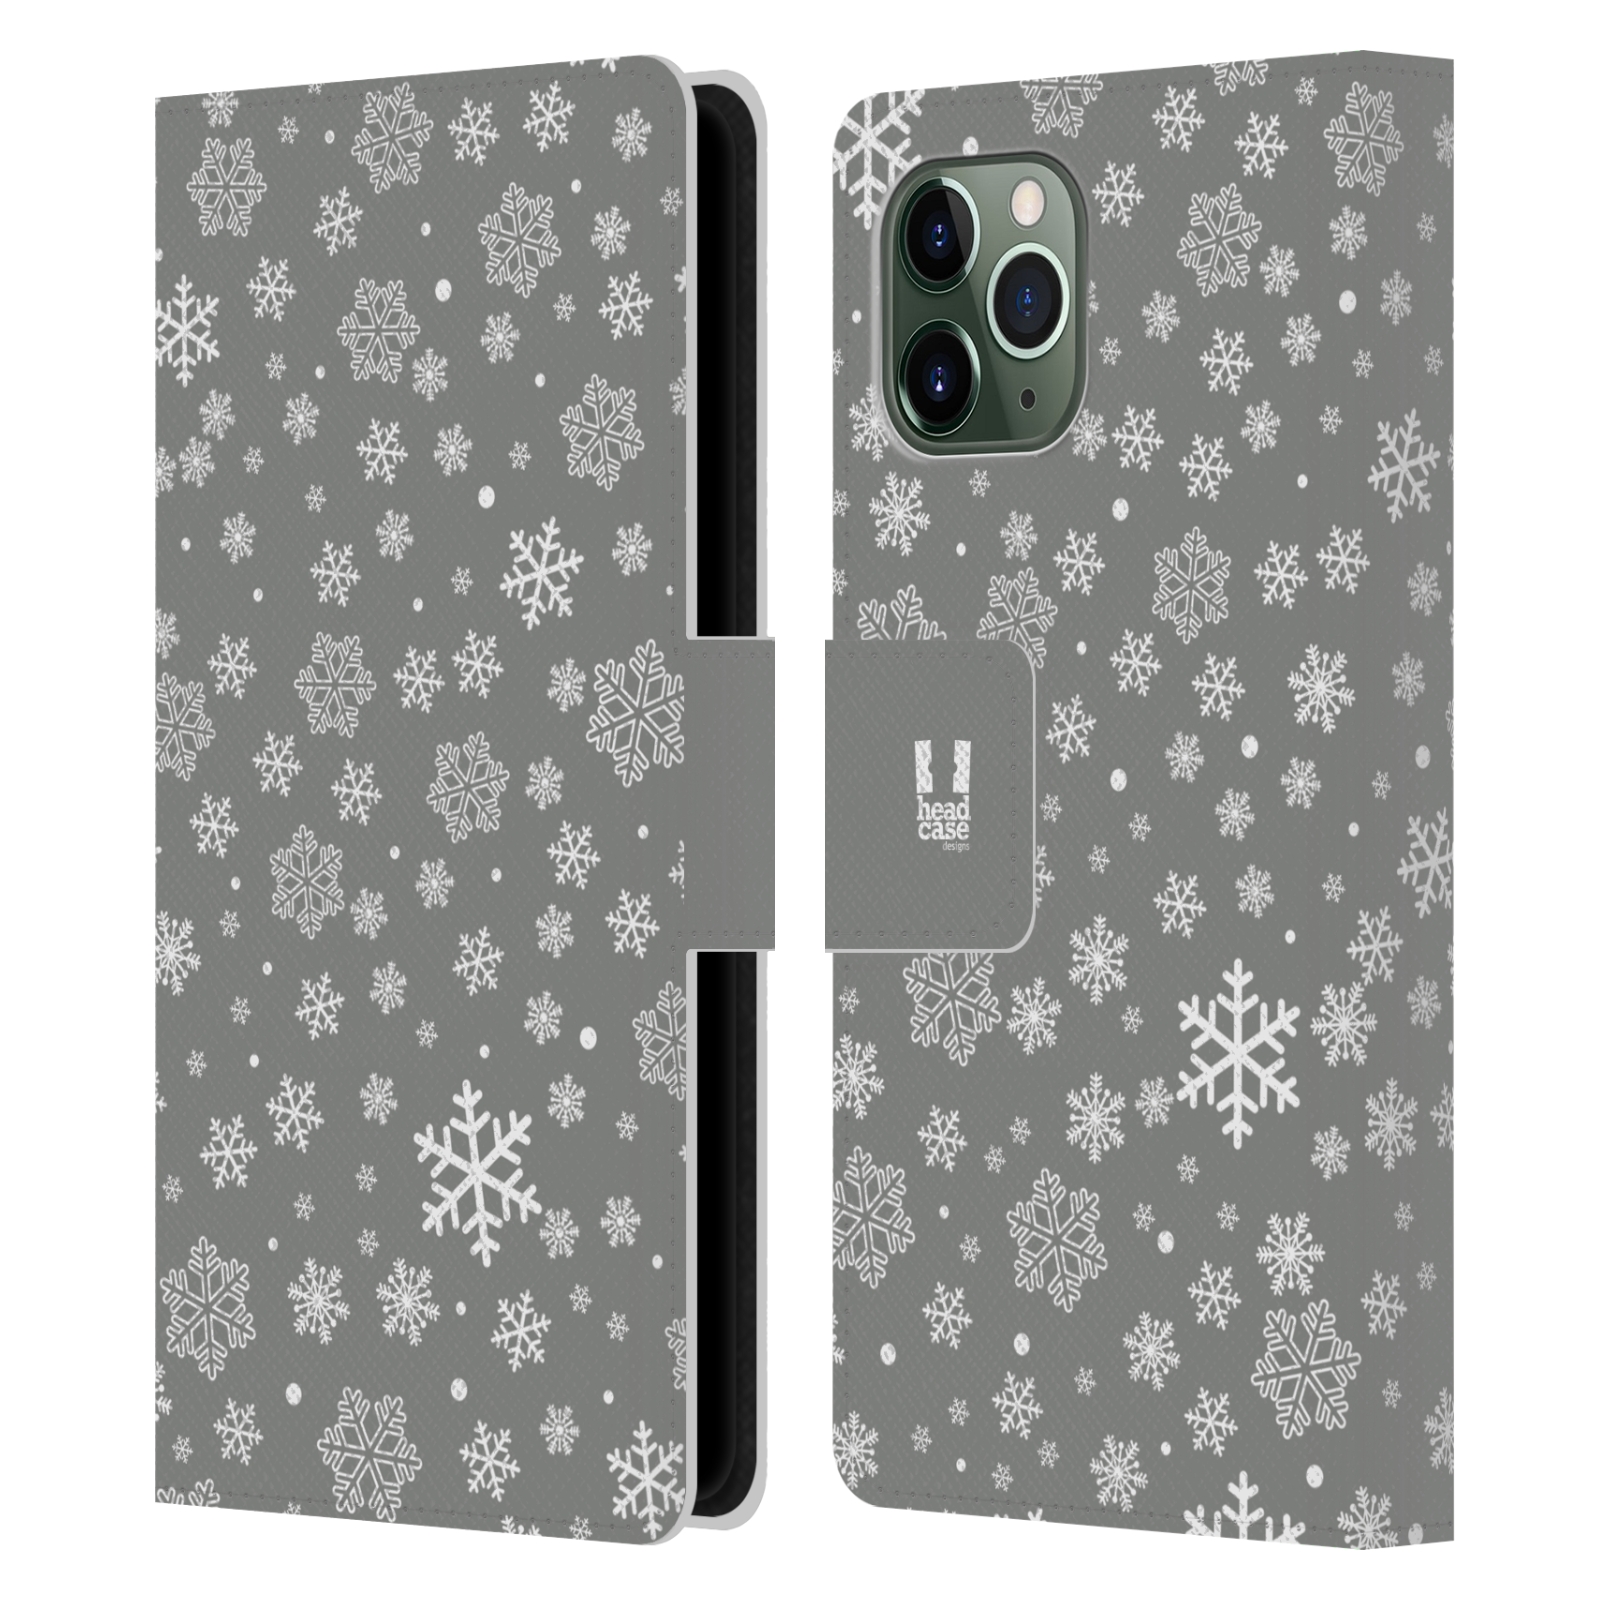 Pouzdro na mobil Apple Iphone 11 PRO stříbrné vzory sněžná vločka